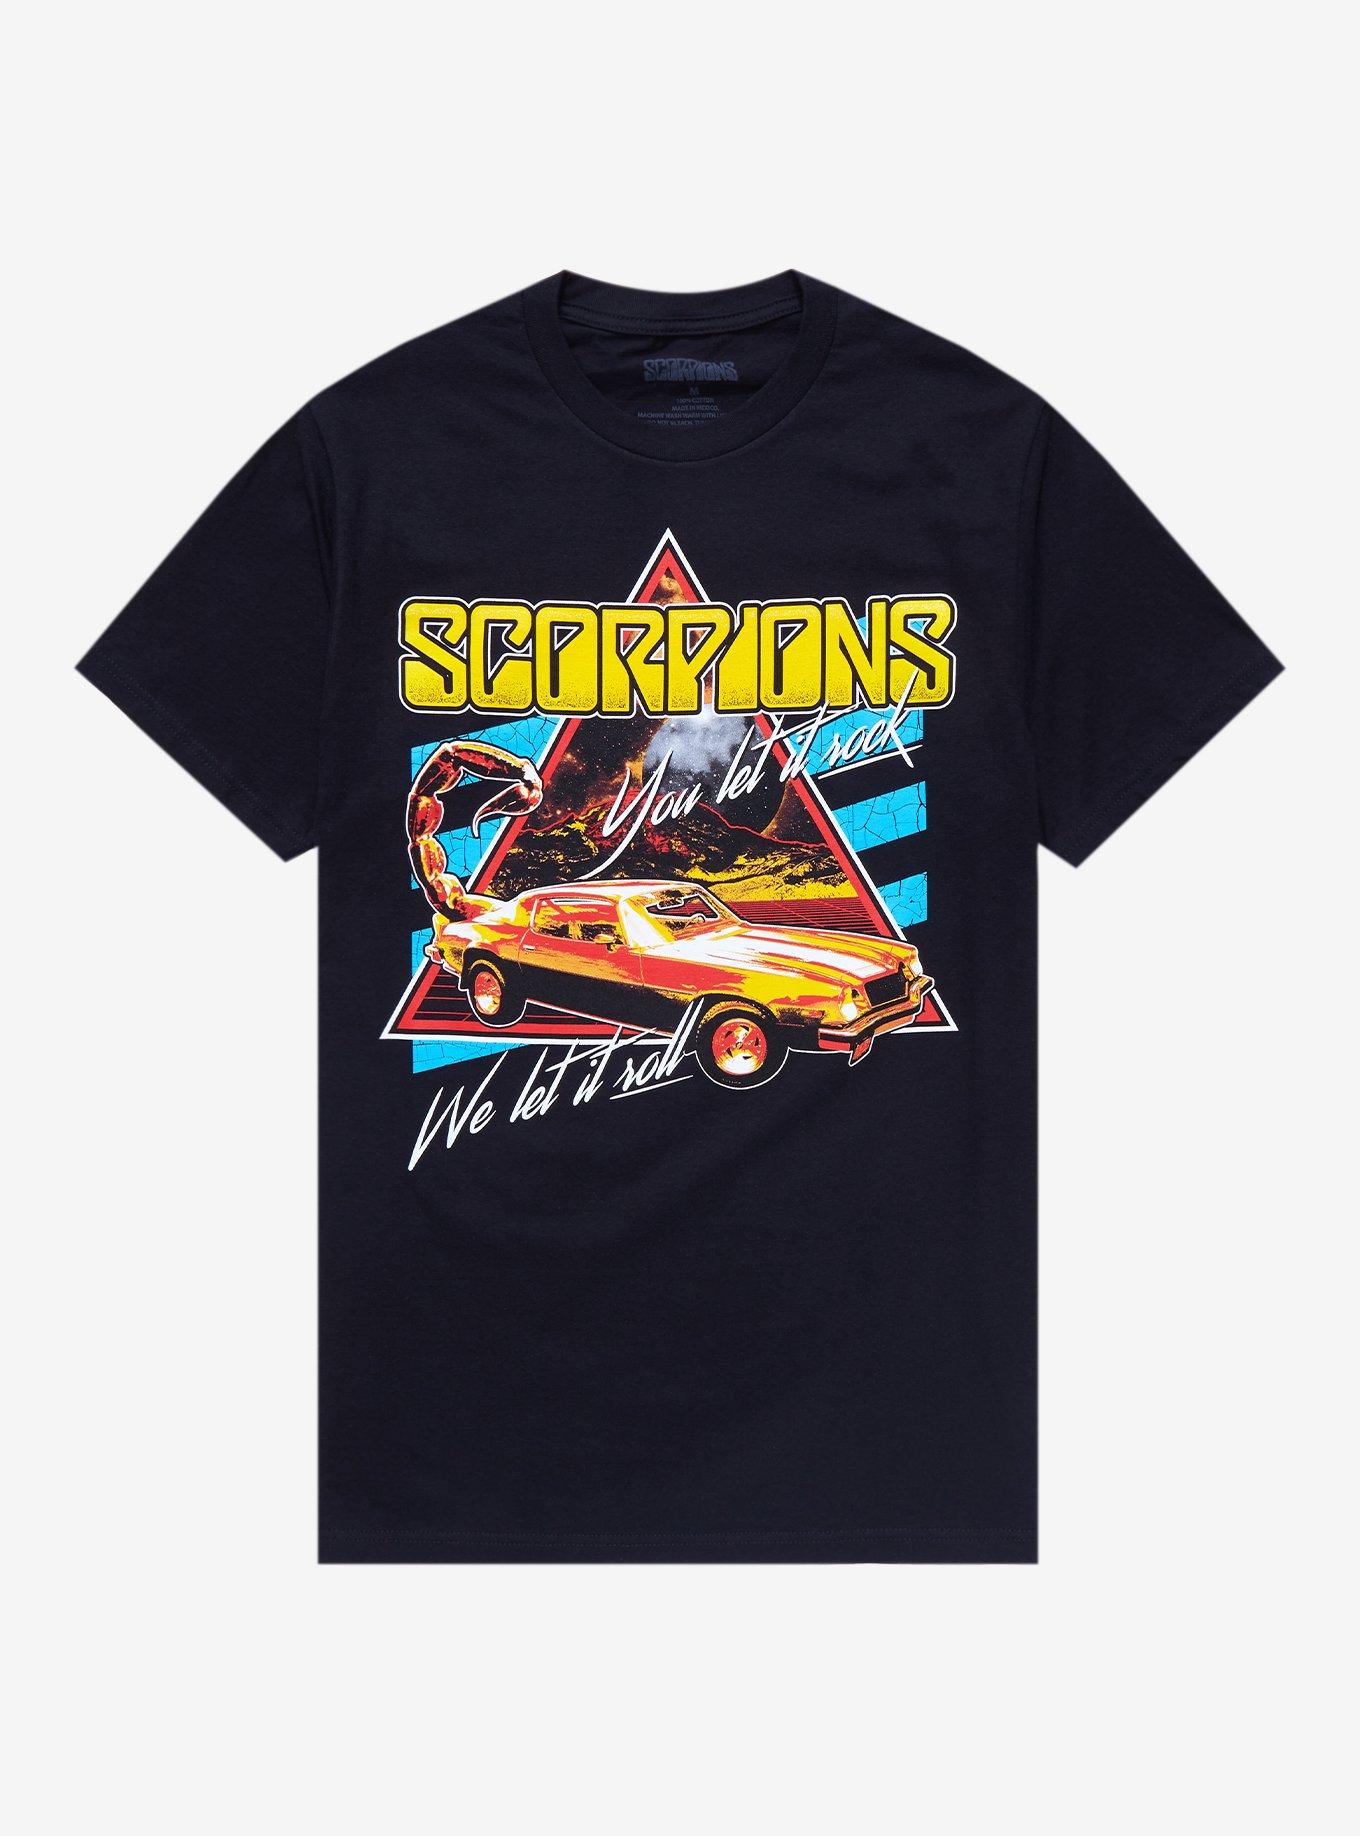 Scorpions We Let It Roll T-Shirt, BLACK, hi-res